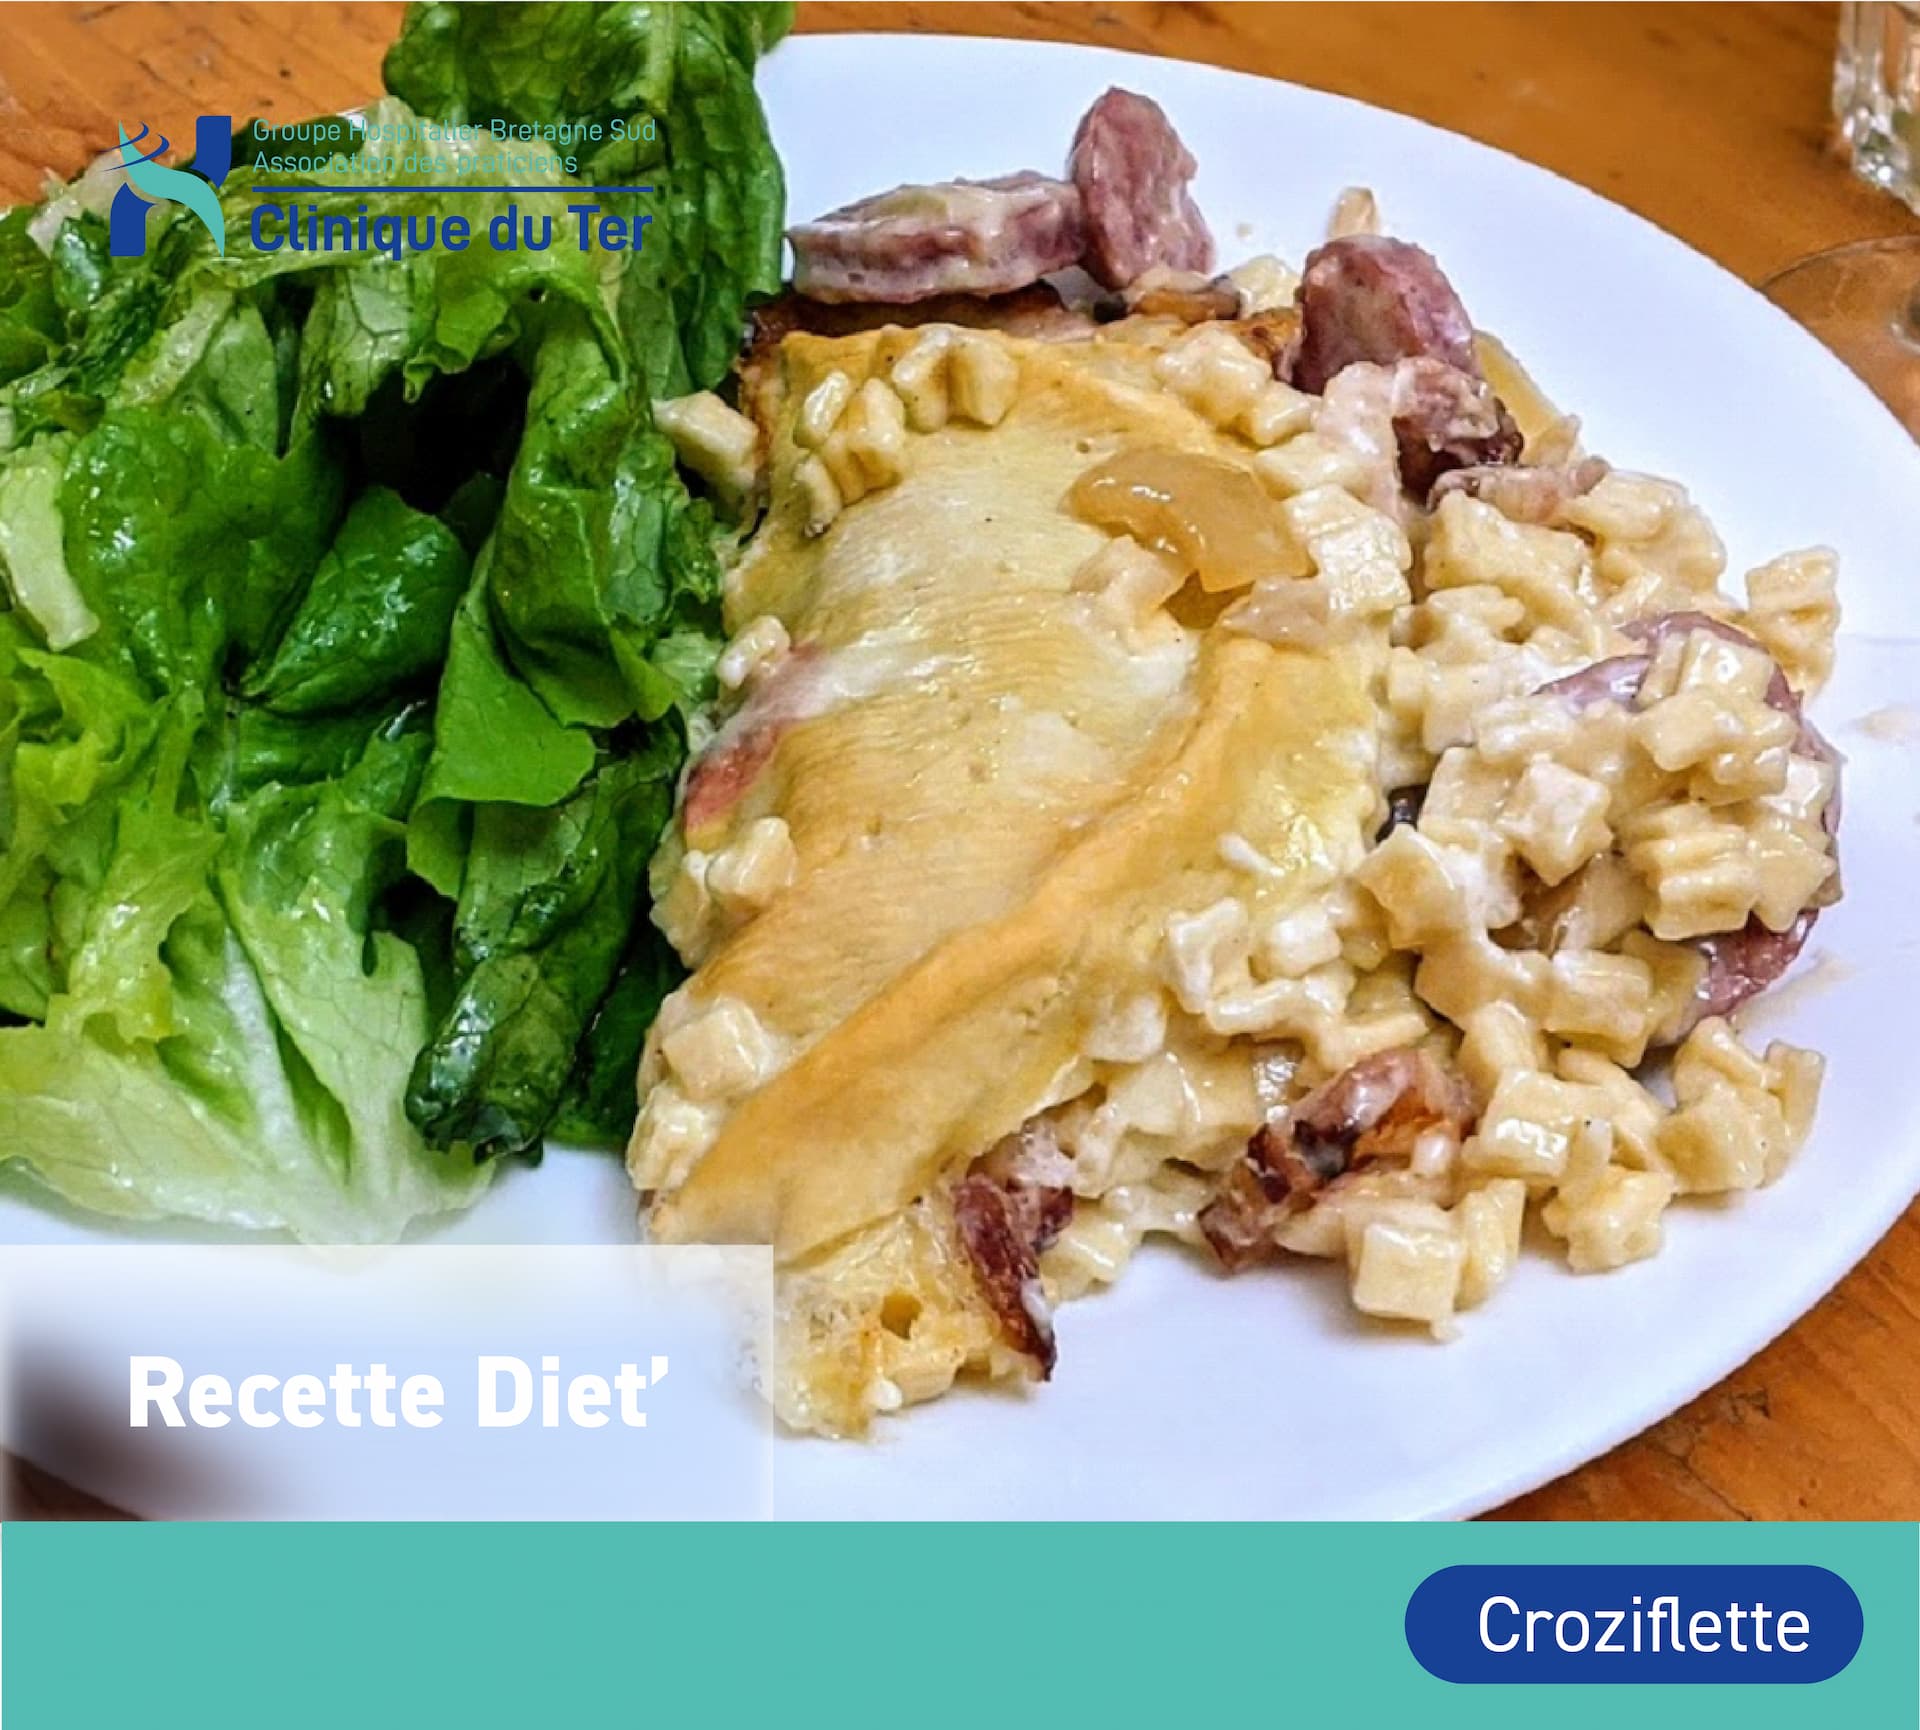 Recette diététique : La Croziflette